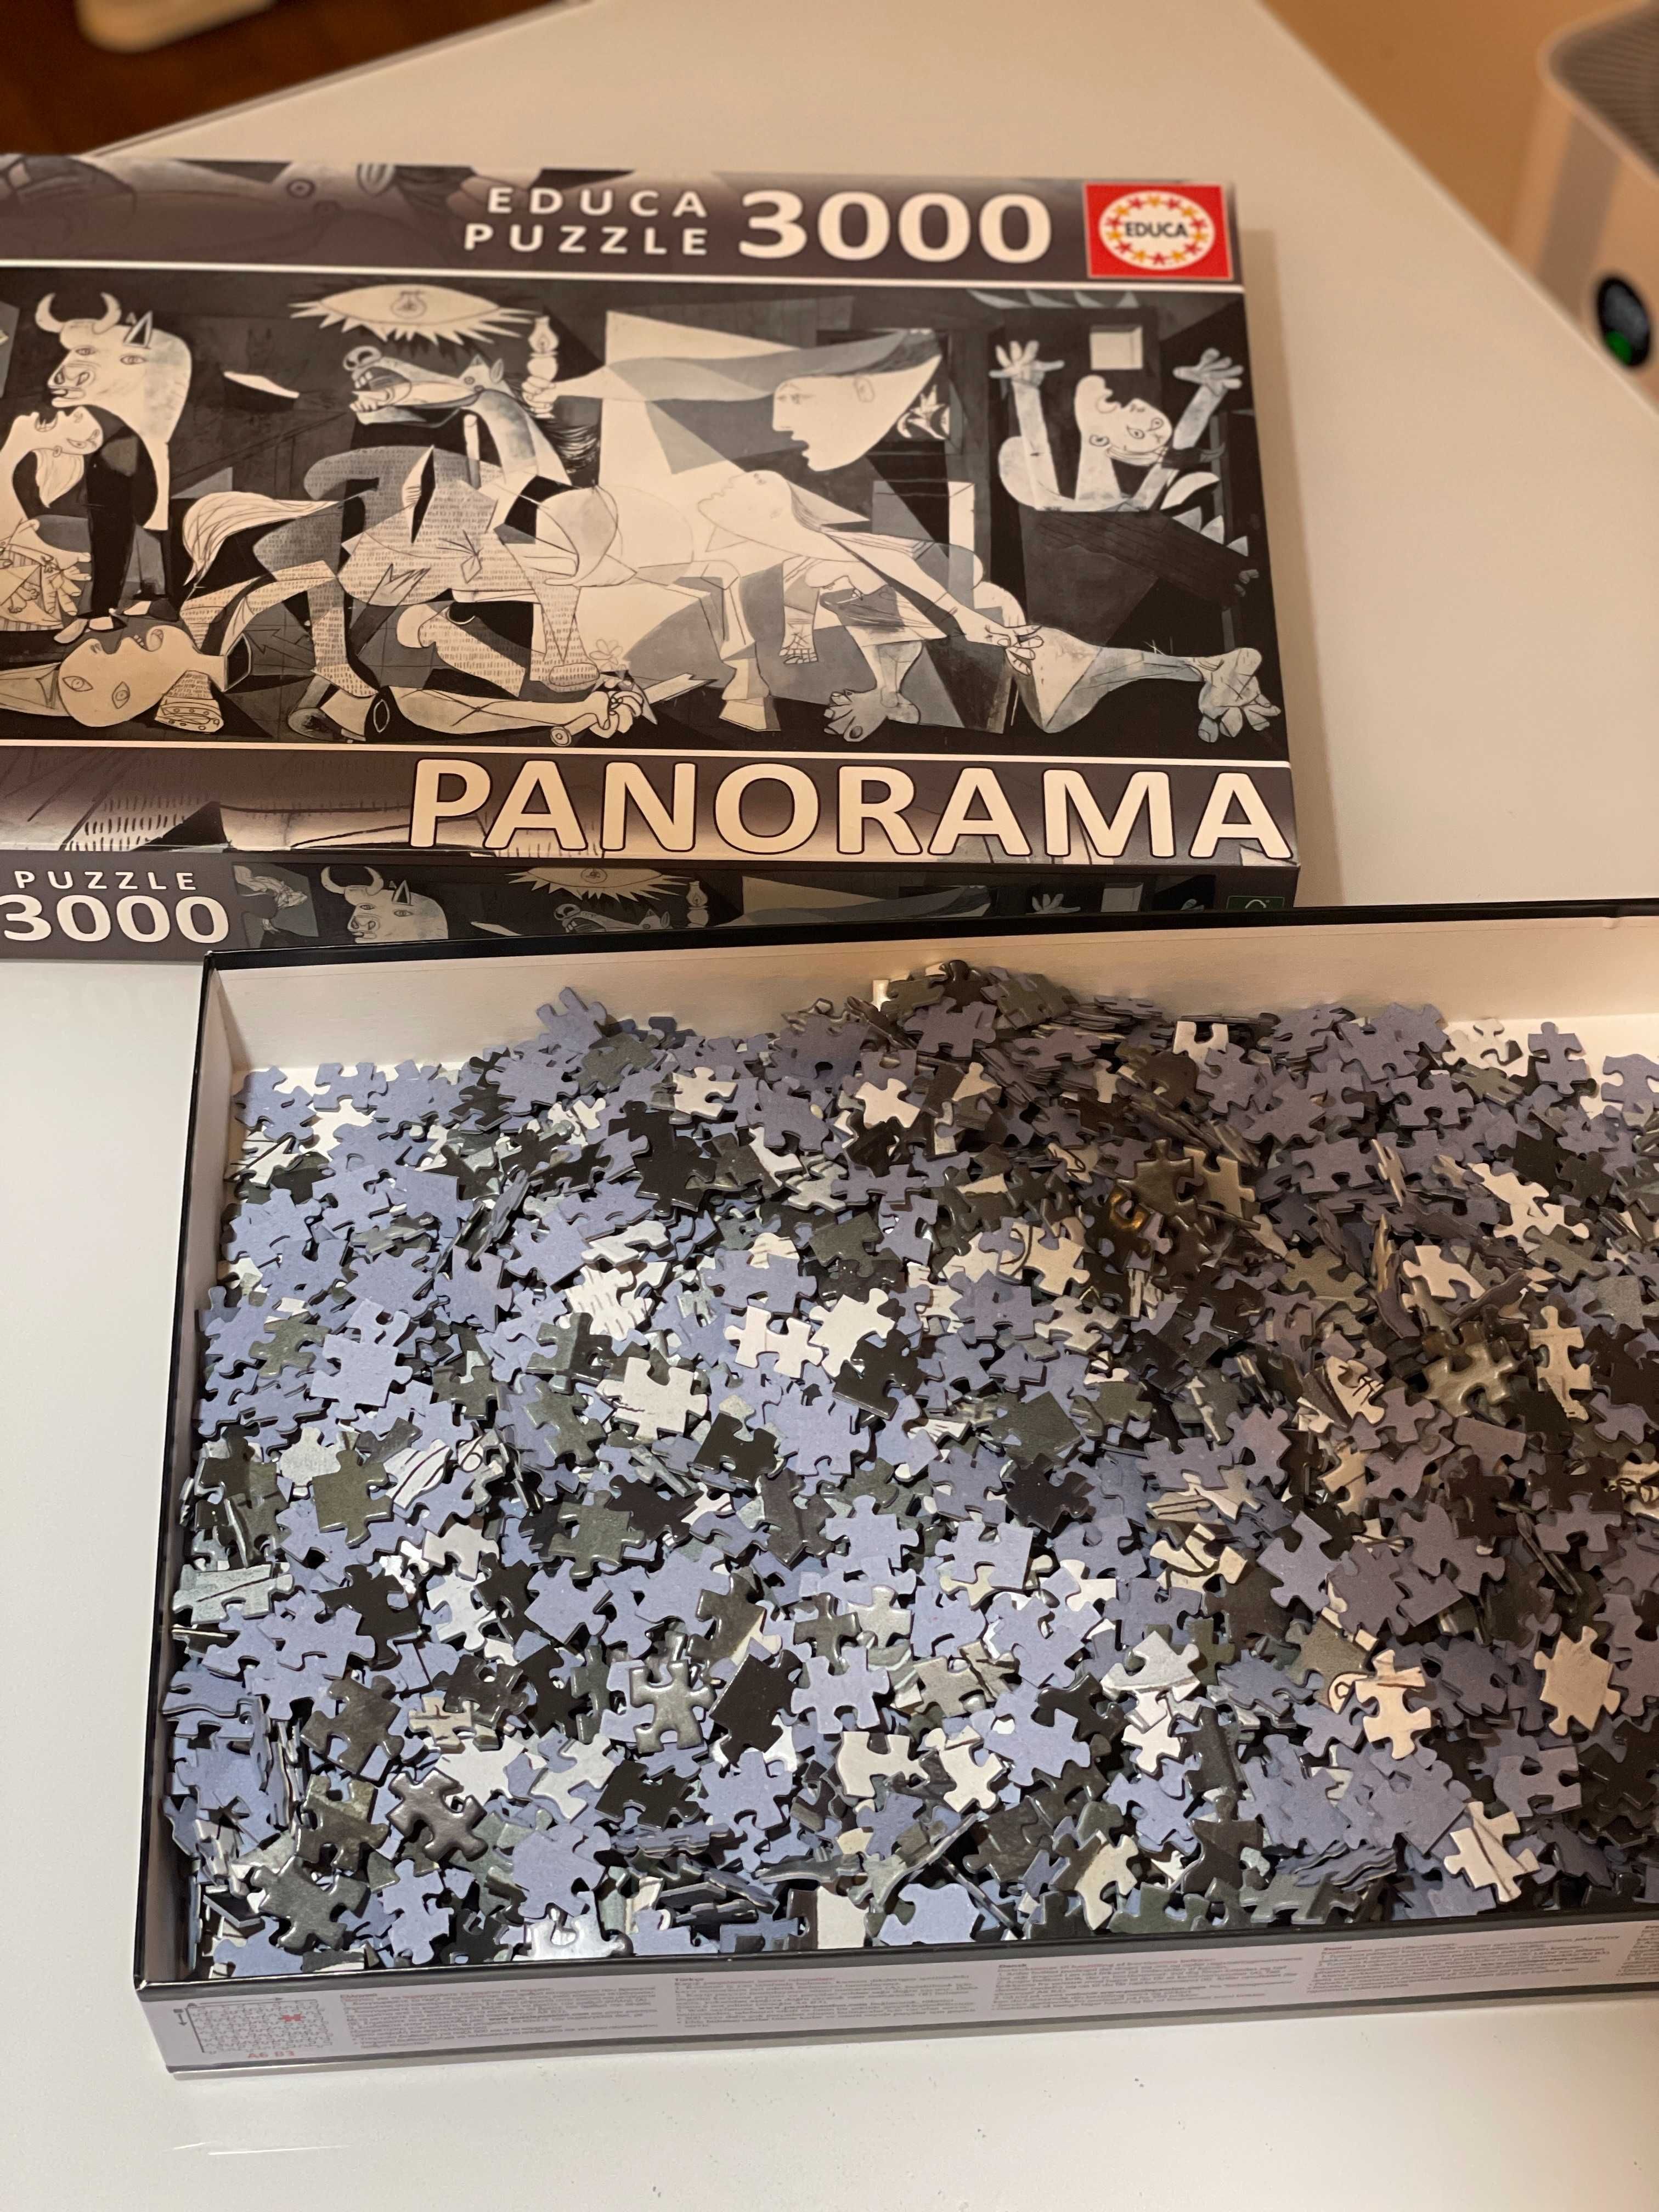 Панорамен пъзел Educa от 3000 части - Герника, Пабло Пикасо